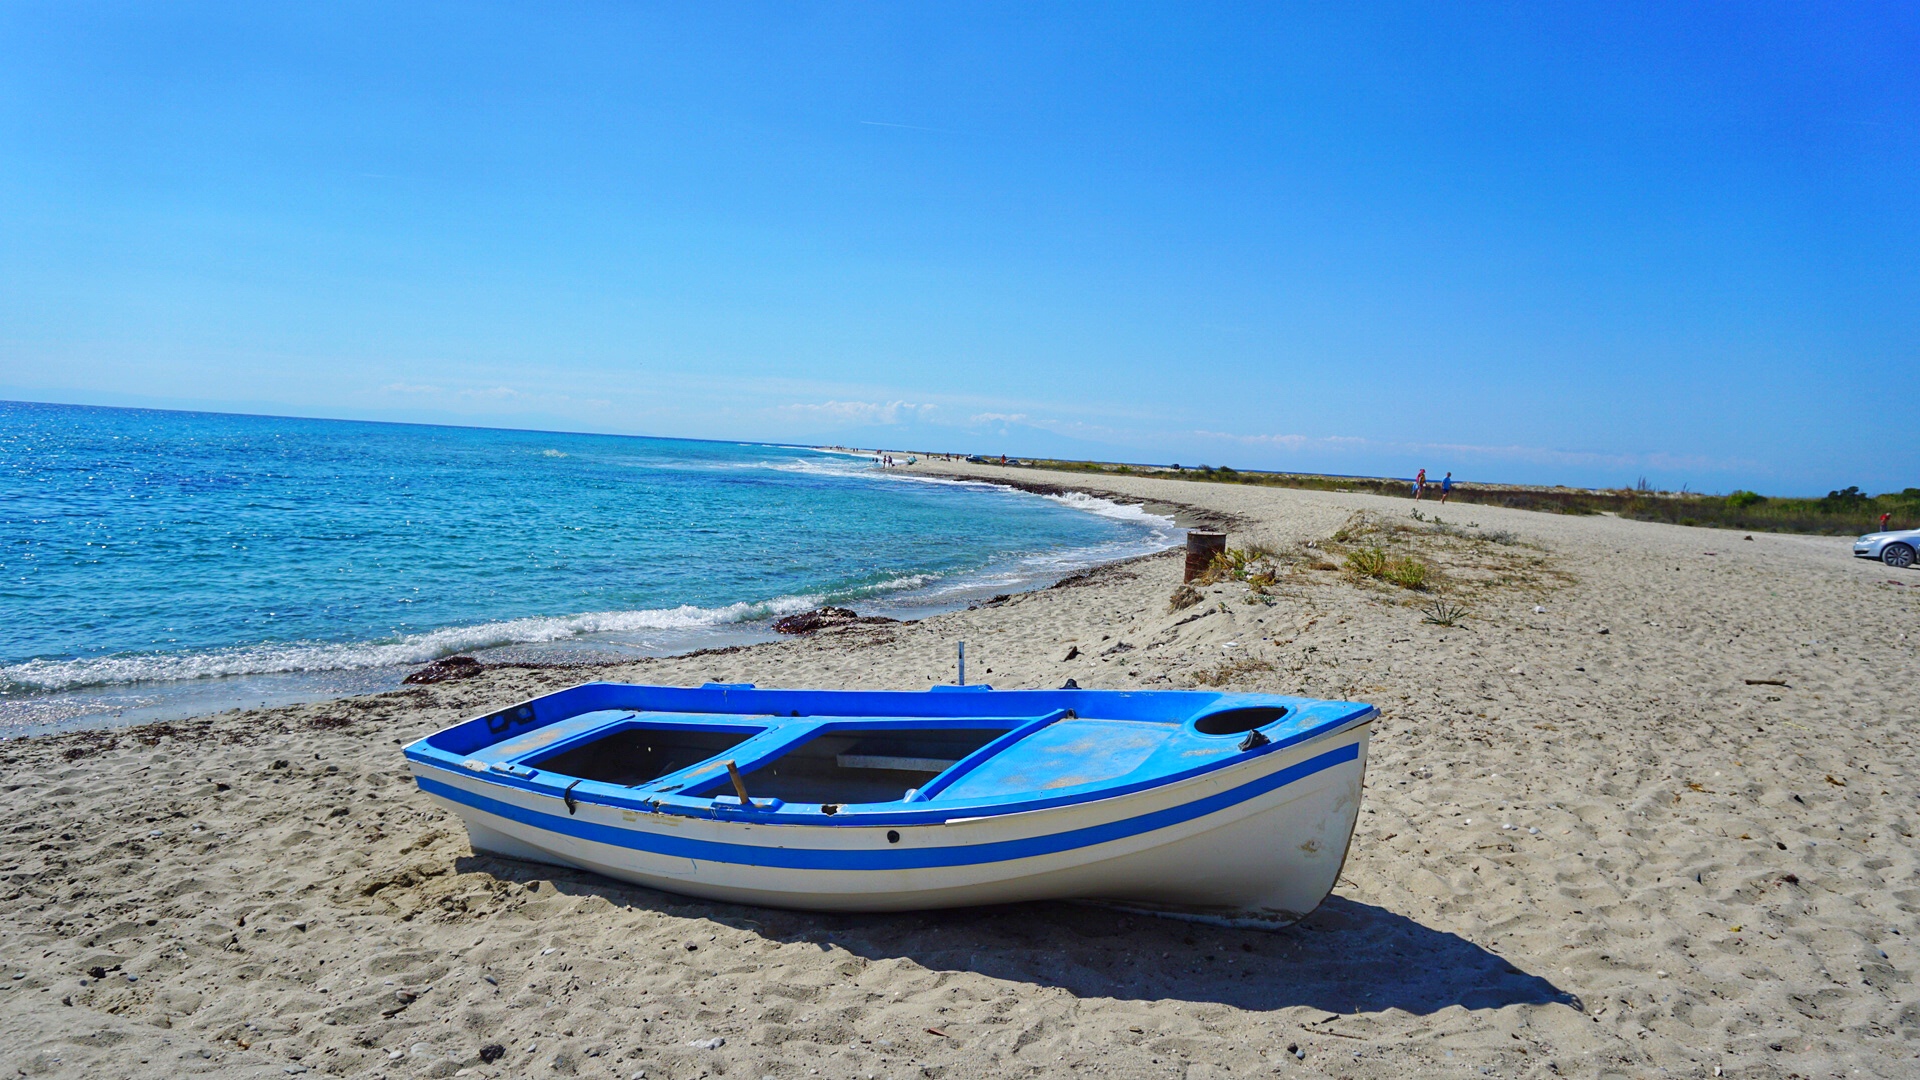 Best Beaches in Kassandra Halkidiki